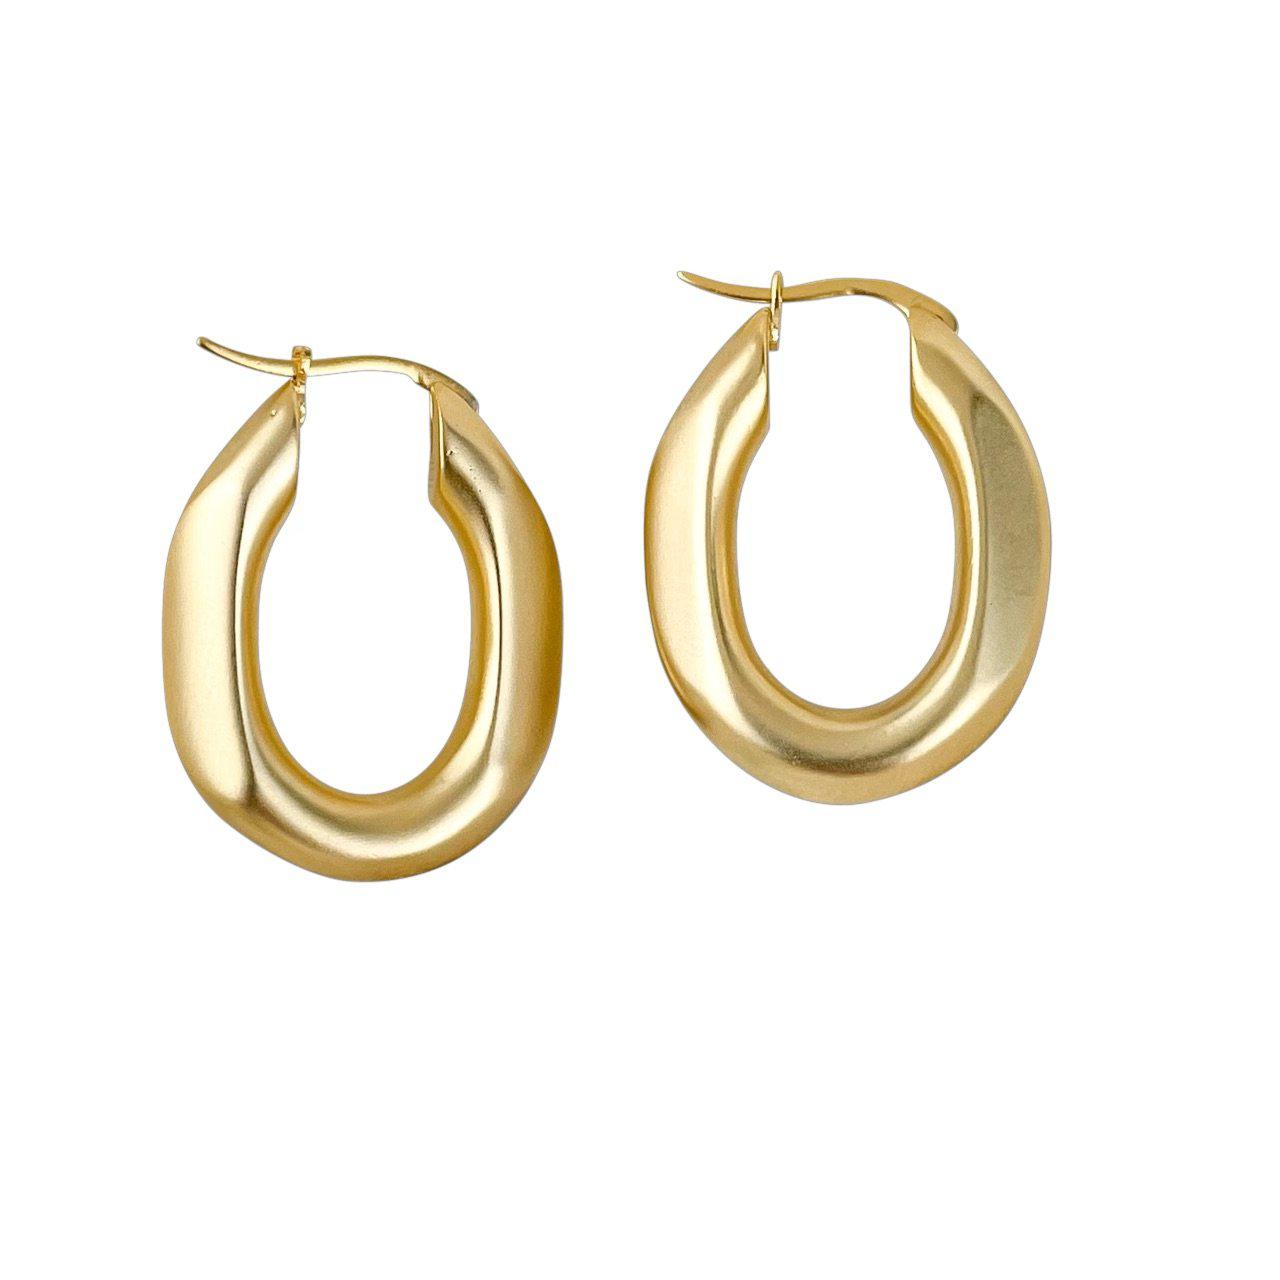 Gold Chunky Statement Hoop Earrings, Hoop earrings, Gold Earrings, Gold Hoops, Gift for Her, Chunky Earrings, Bold Hoop Earrings, 14K PVD Gold Plated